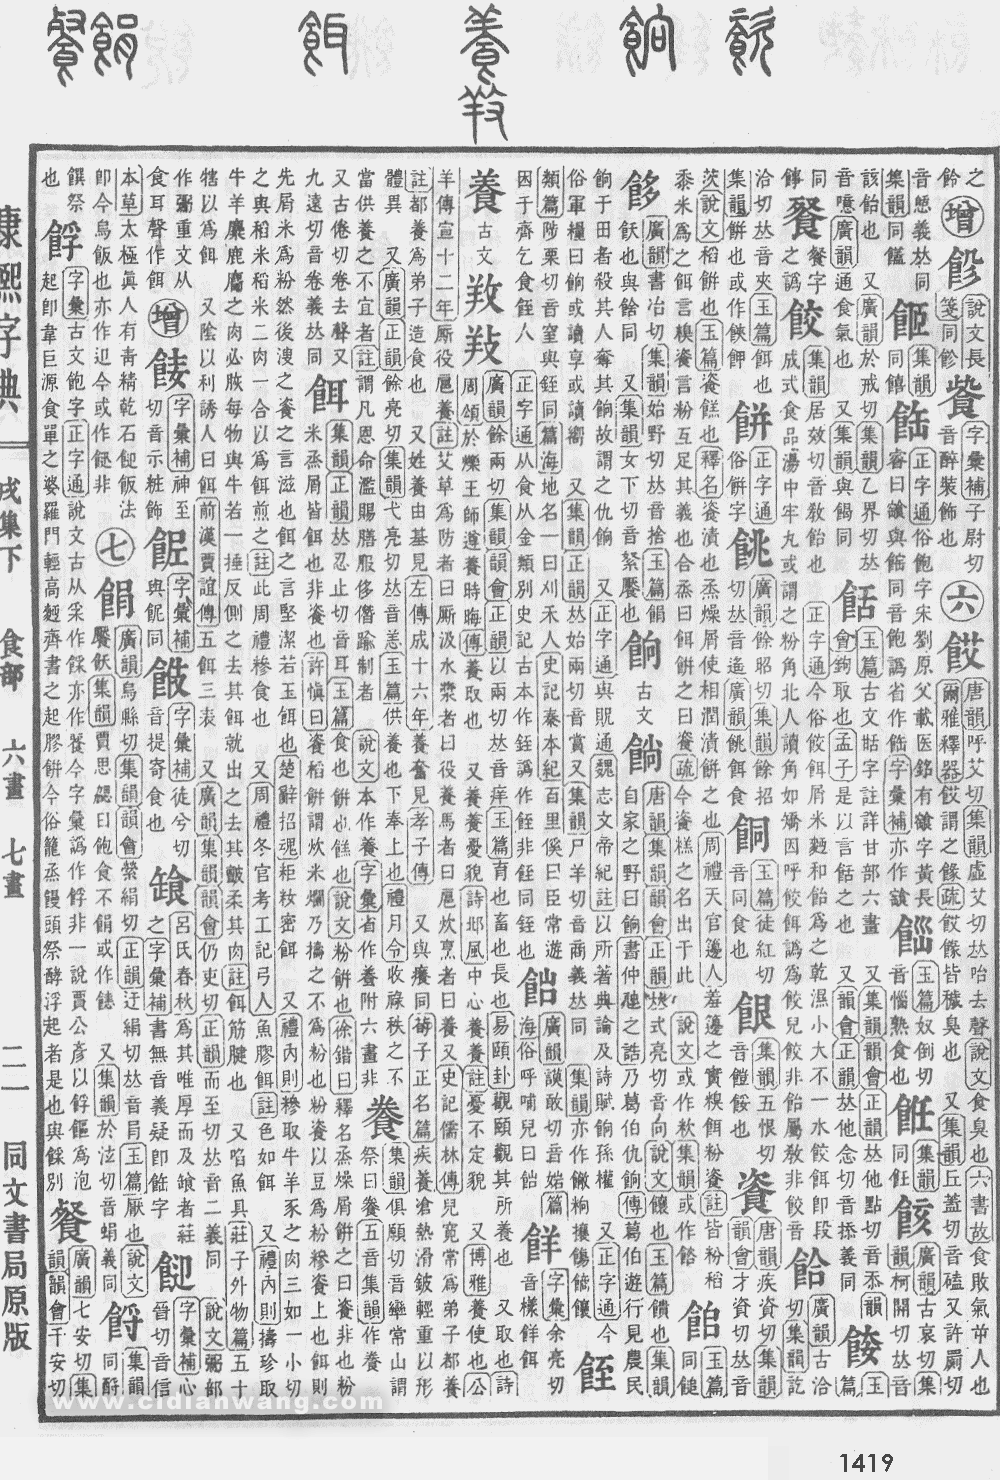 康熙字典掃描版第1419頁